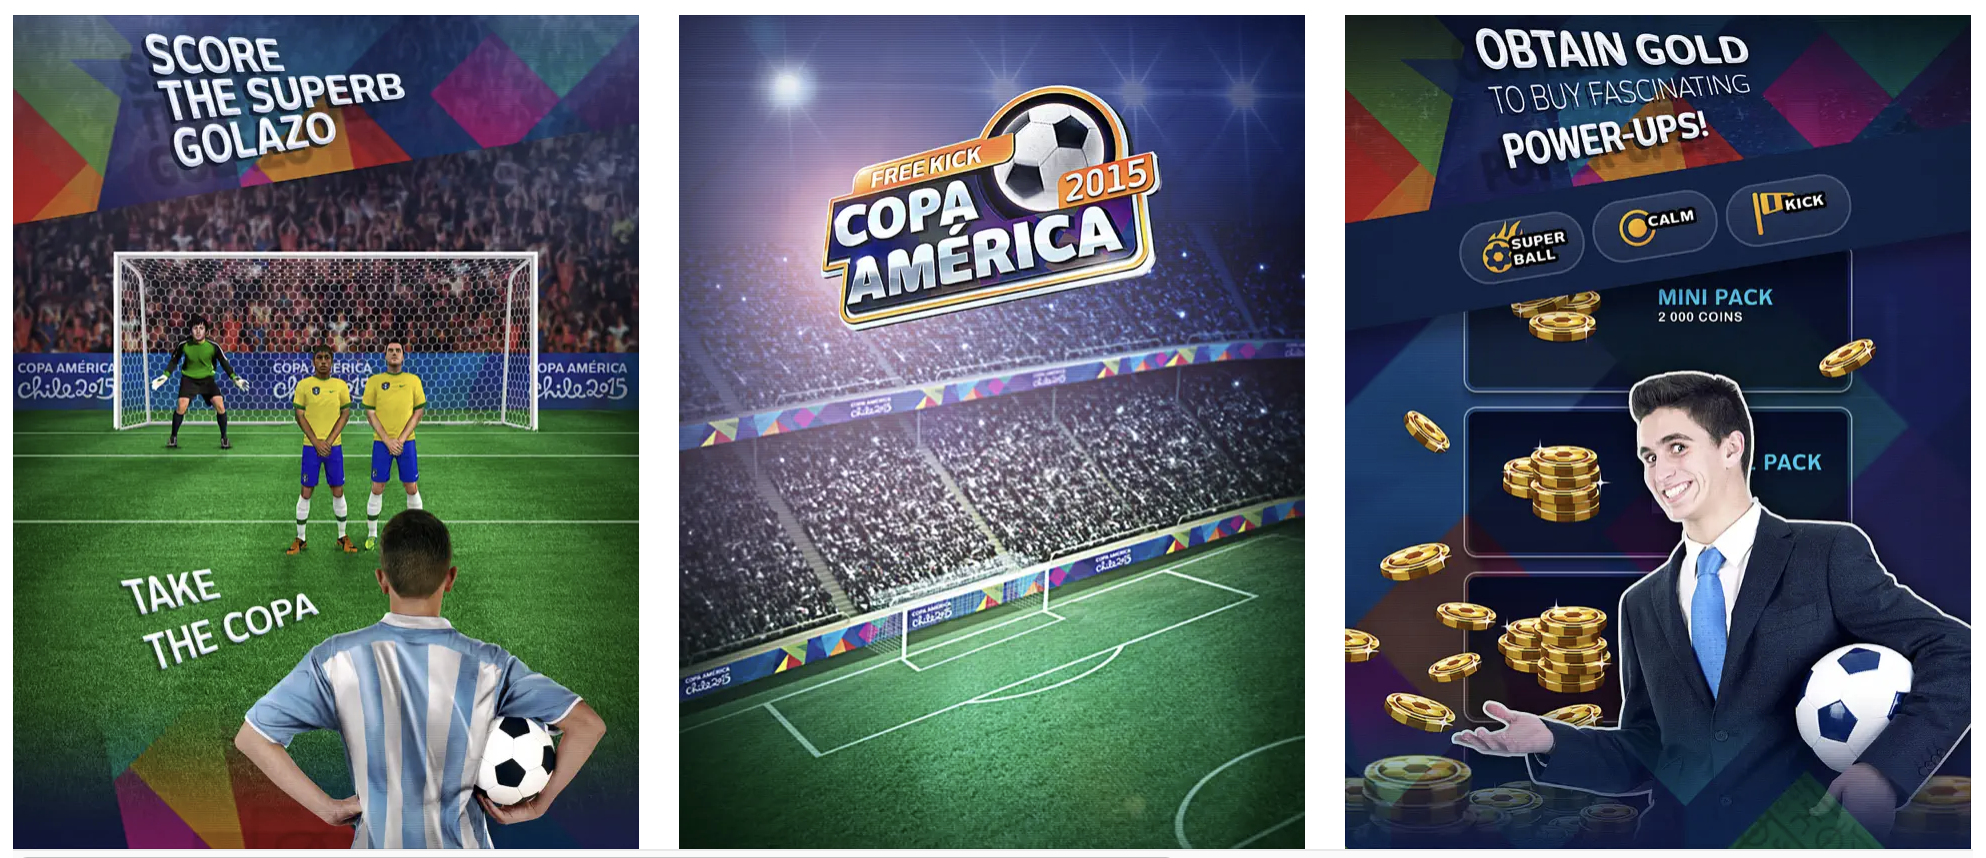 Free kick challenge - Copa America 2015 edition Description